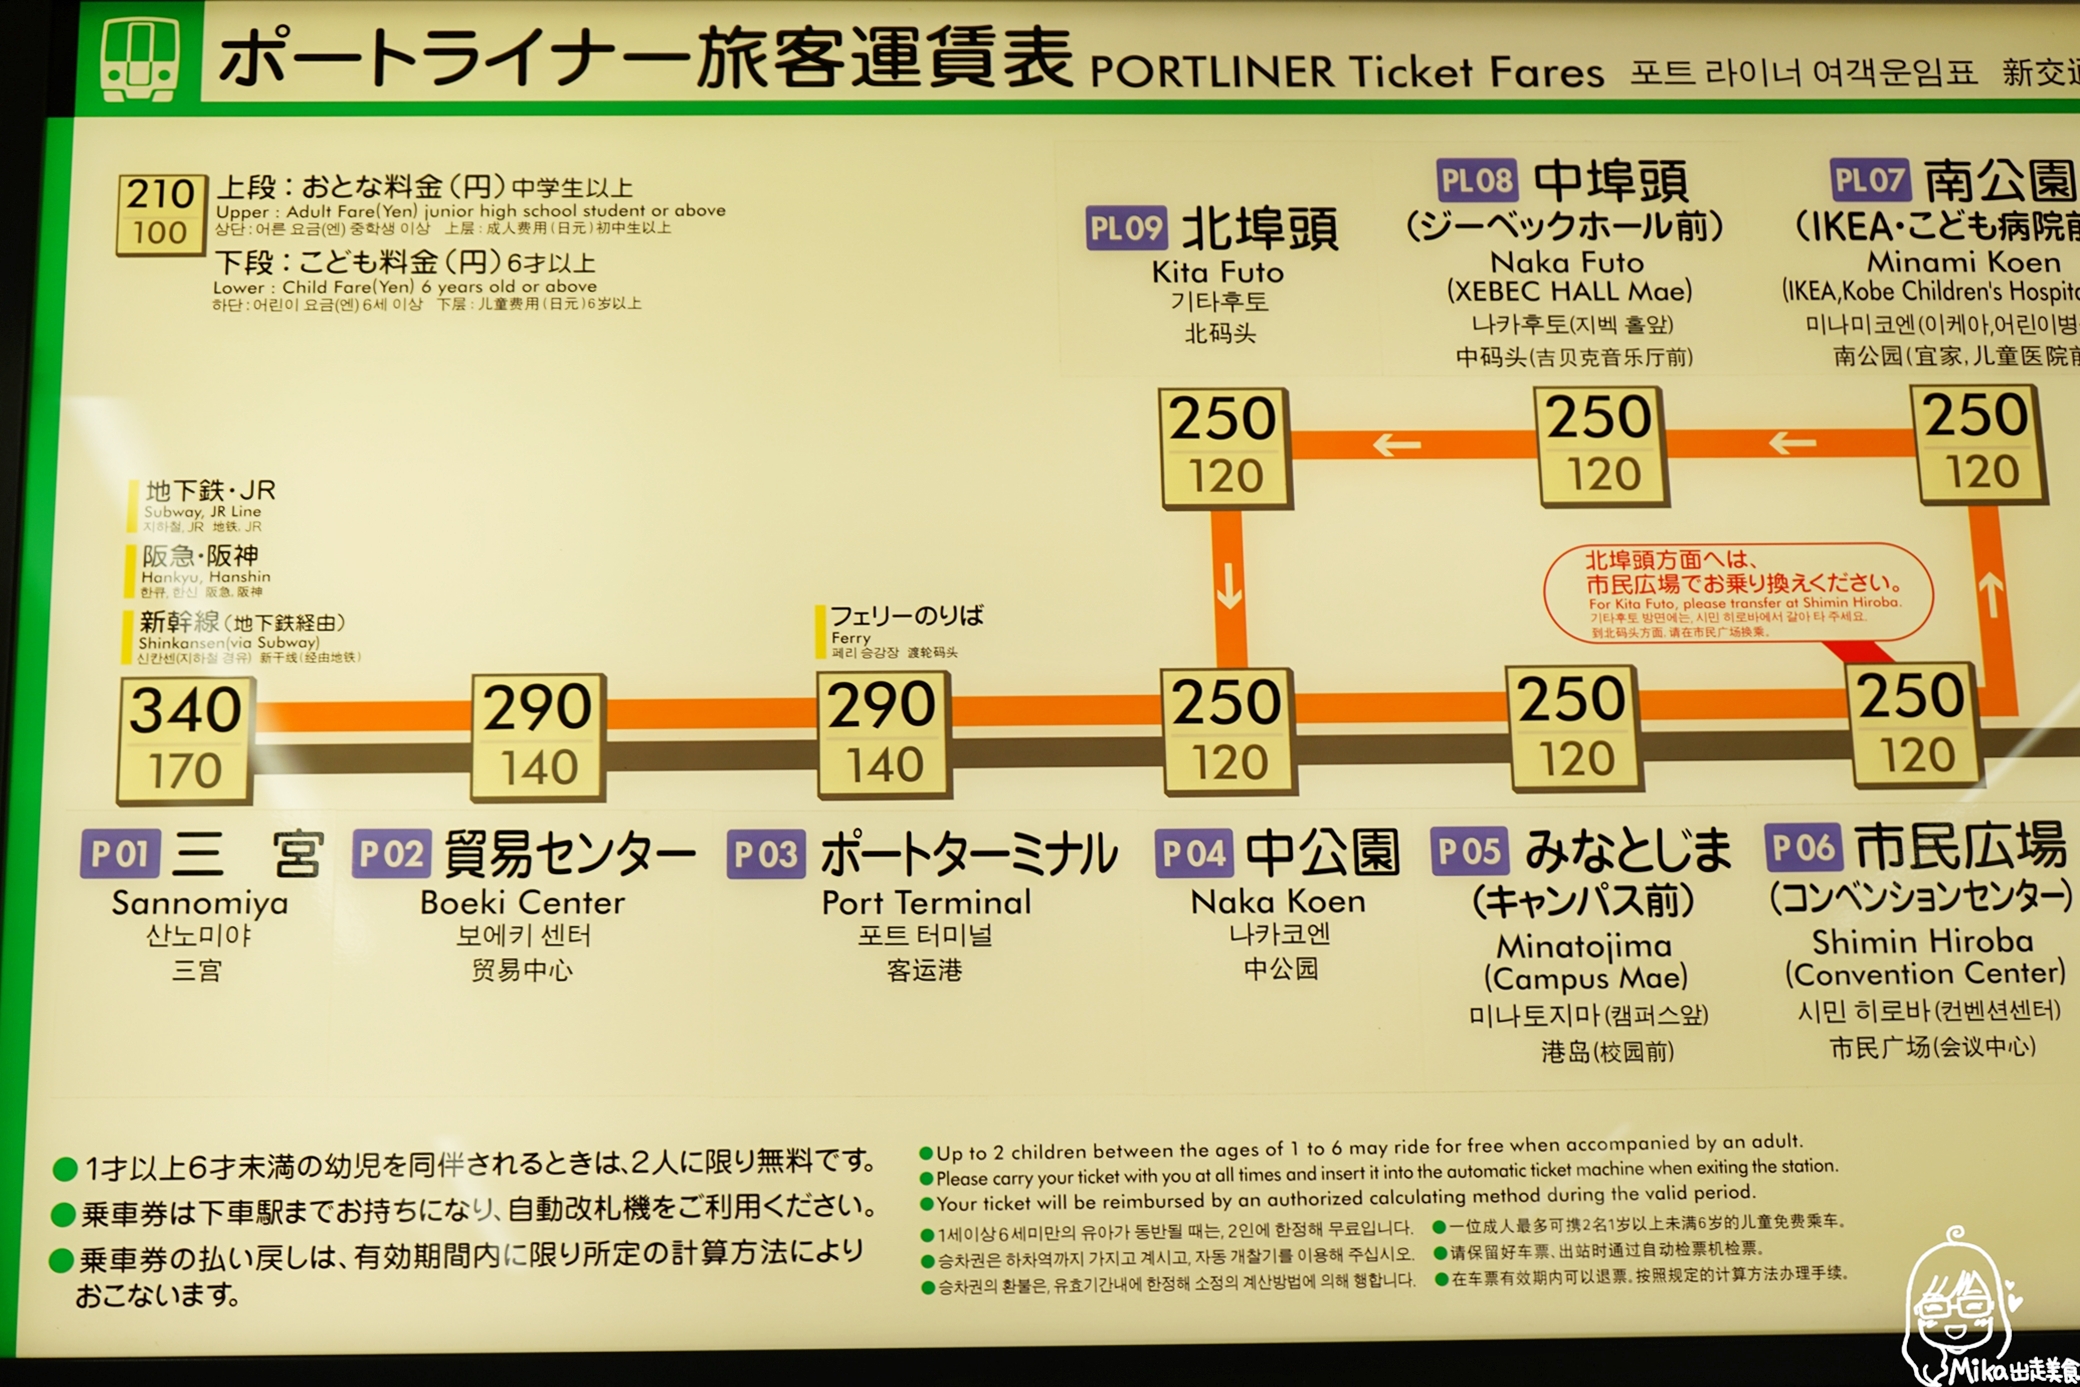 『日本。神戶』 Bay Shuttle 關西機場→神戶海上高速船｜抄捷徑走海路  從關西機場到神戶只要30分鐘！優惠國外旅客 單程船資只要日幣500元！超值優惠到2021年3月31日為止。